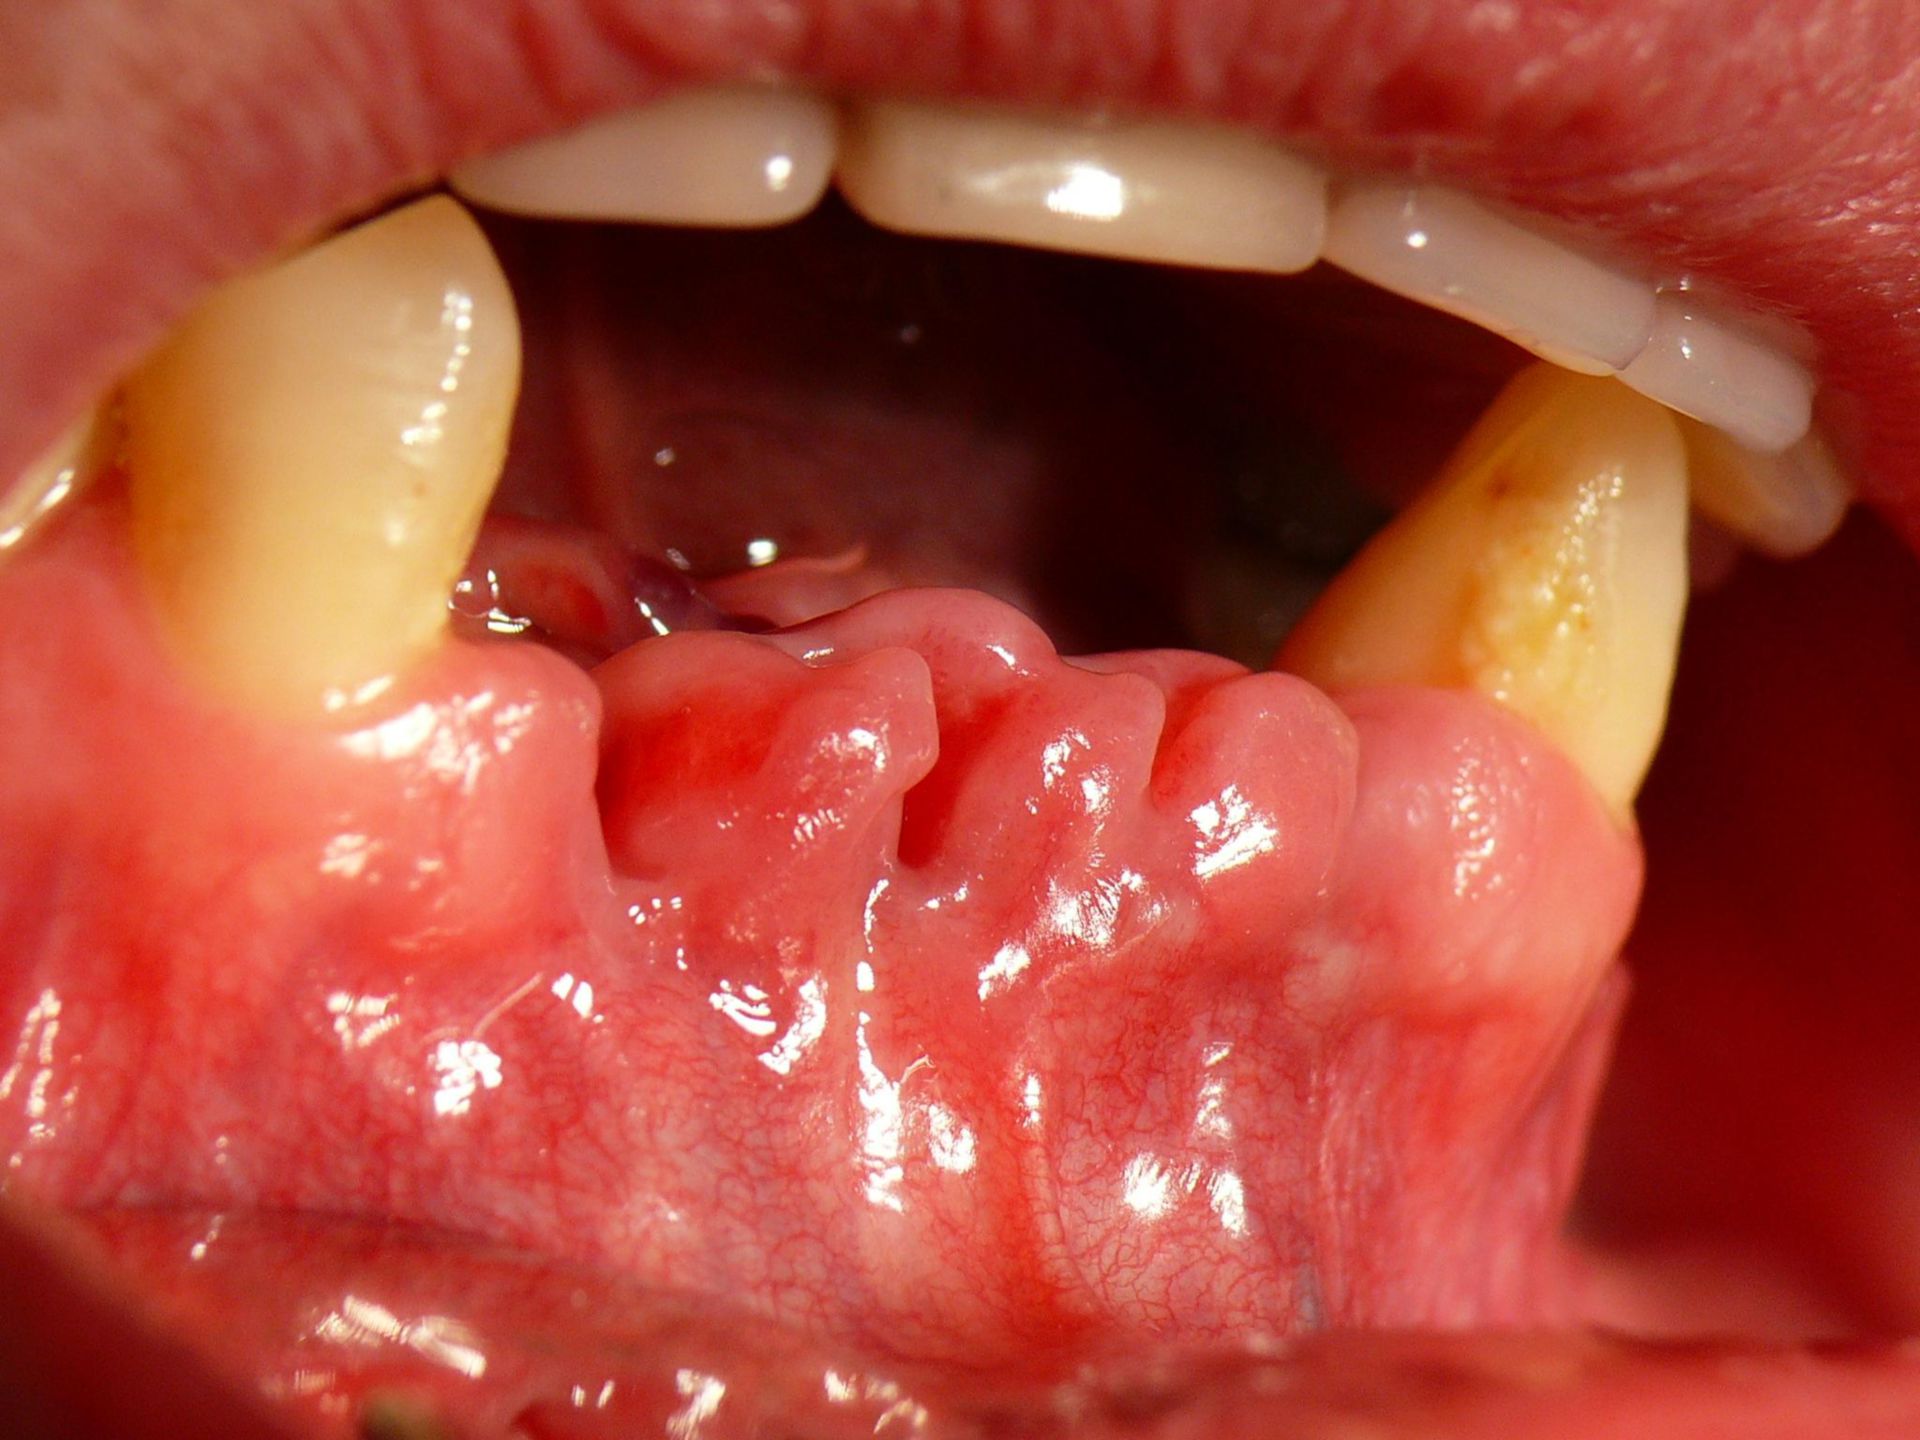 Mandibola inferiore dopo estrazione dentale